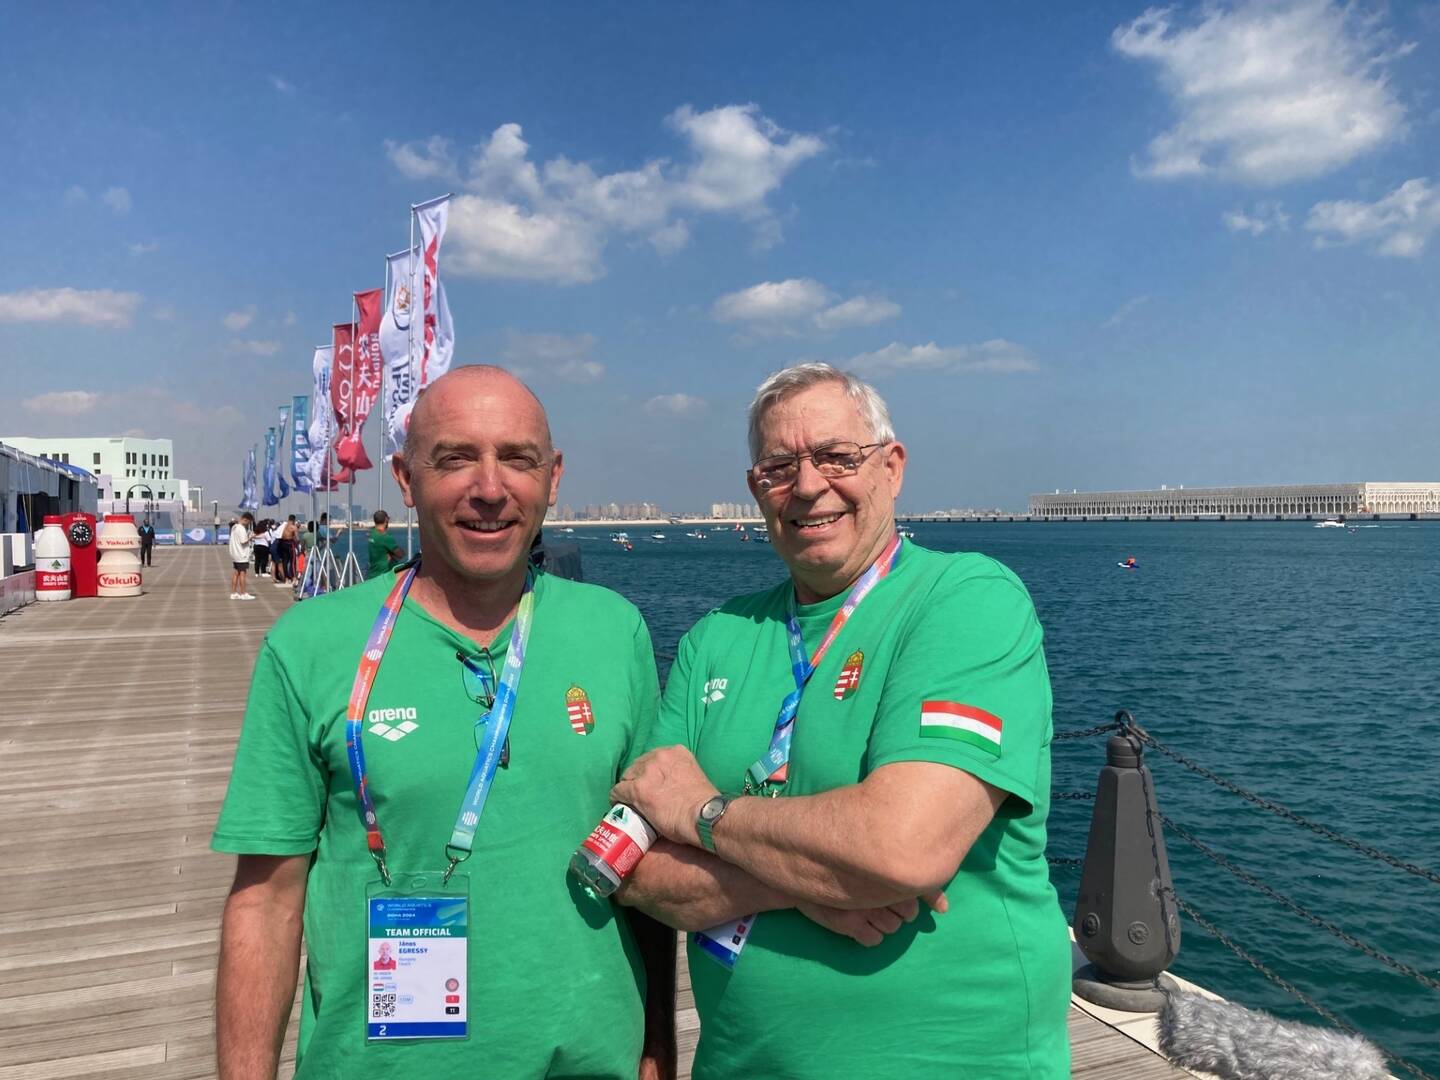 Egressy János tanítványai remekeltek a dohai vizes világbajnokságon 2